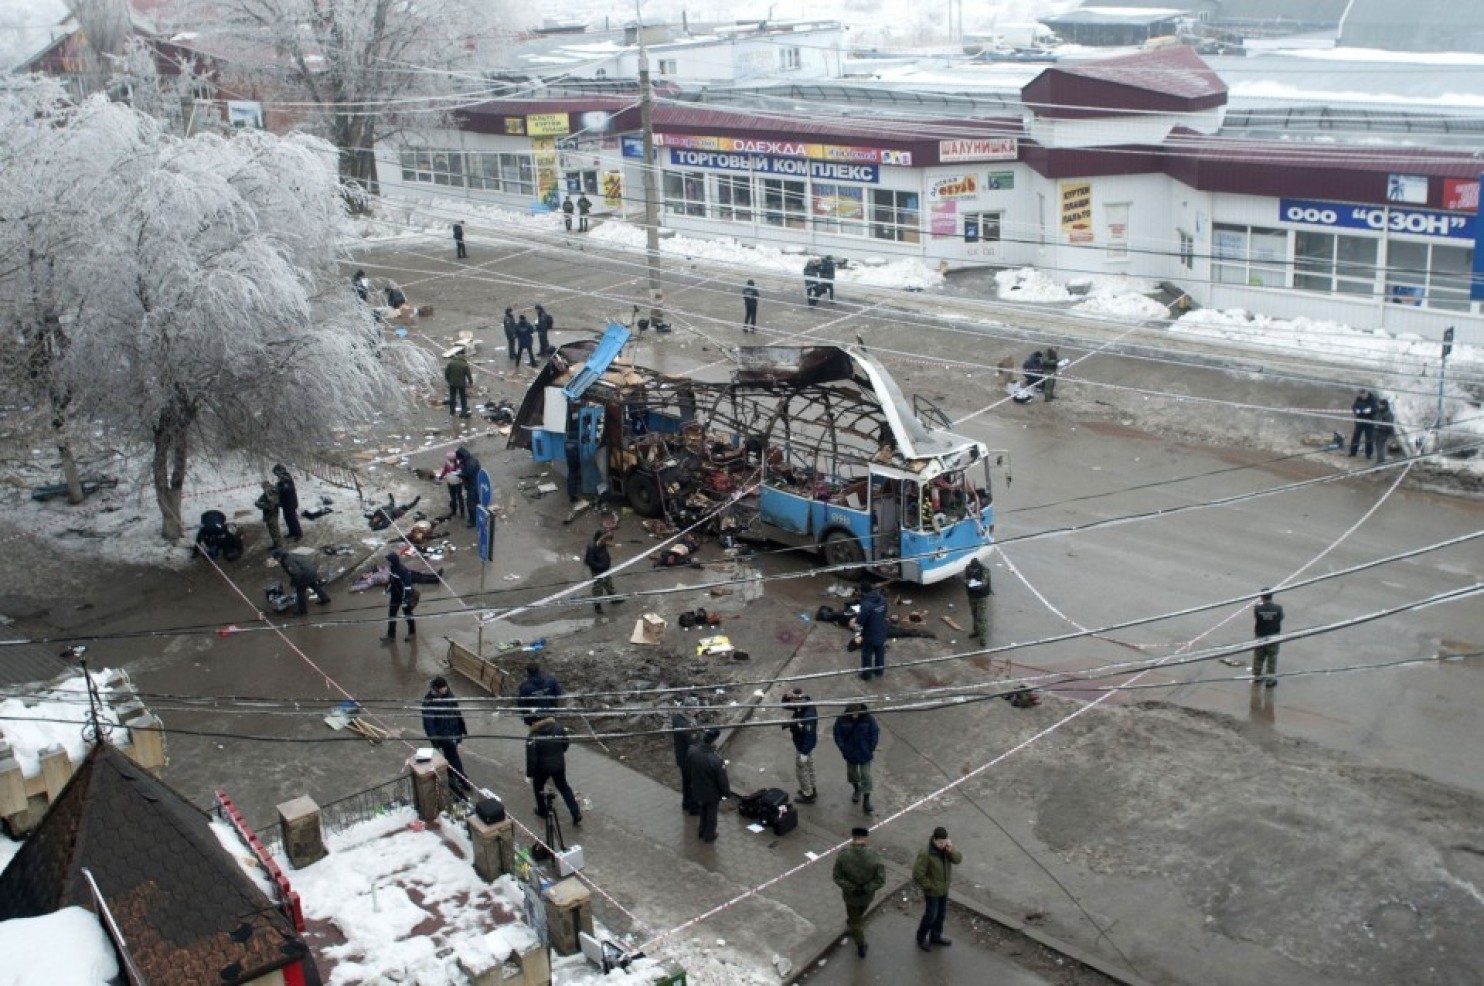 Điều tra viên làm việc tại hiện trường vụ nổ ở Volgograd vào ngày 30-12-2013 - Ảnh: Reuters